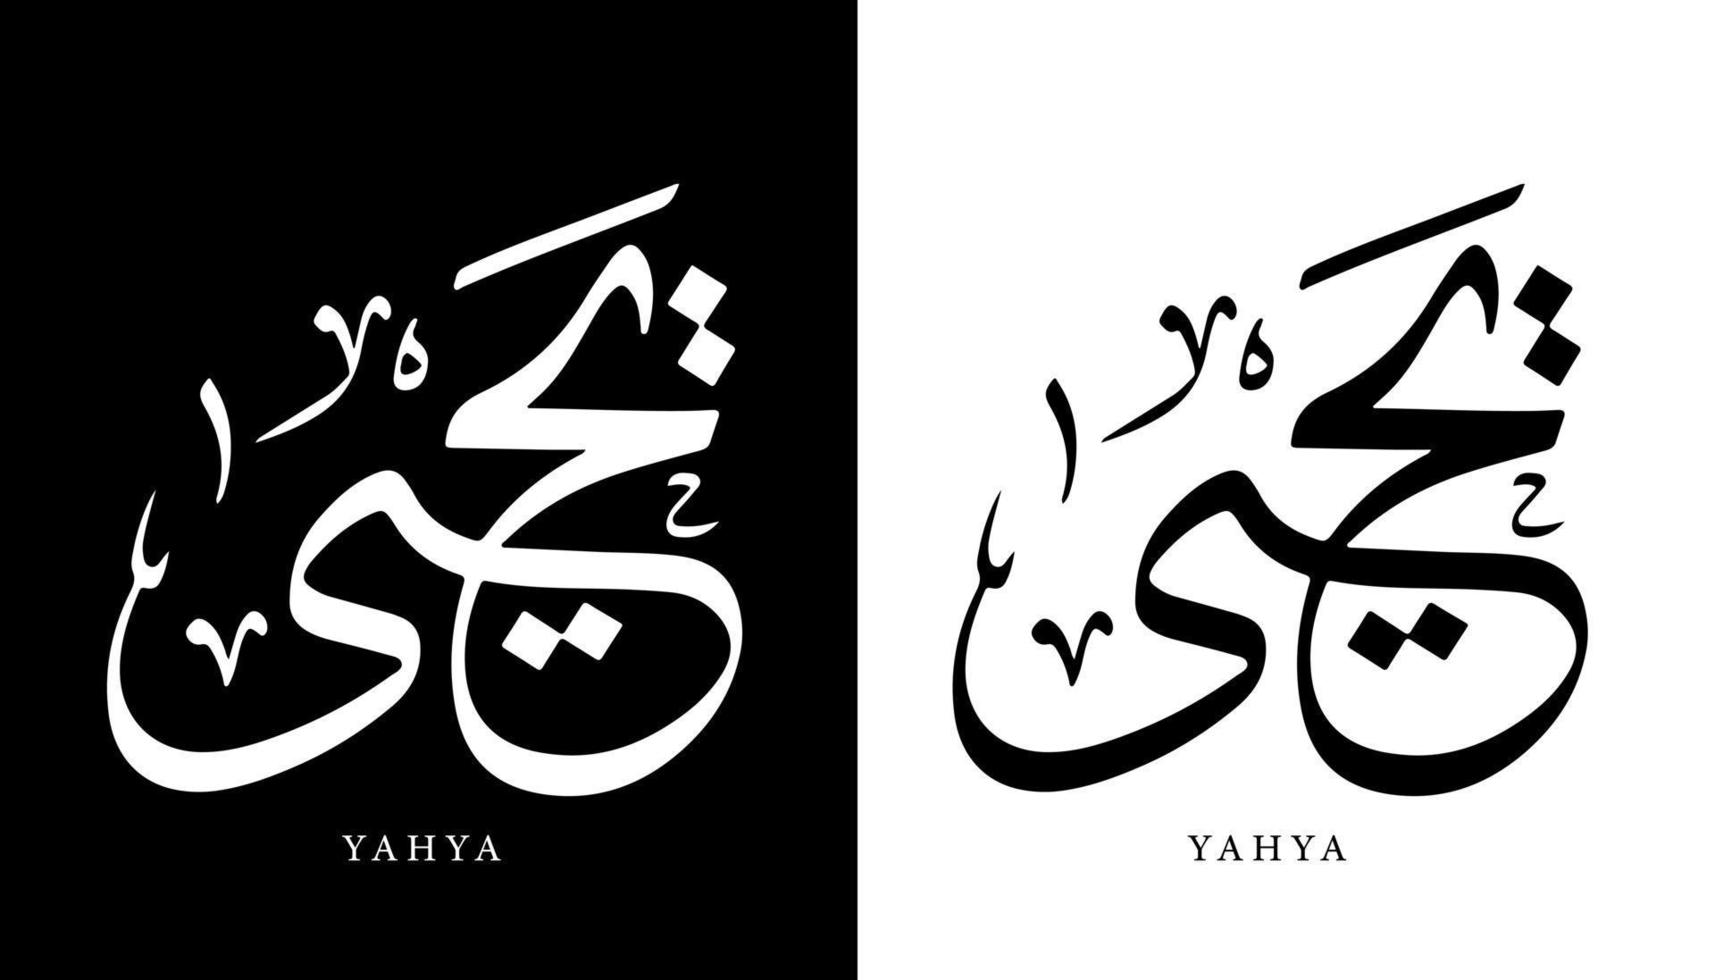 nome della calligrafia araba tradotto 'yahya' lettere arabe alfabeto font lettering logo islamico illustrazione vettoriale